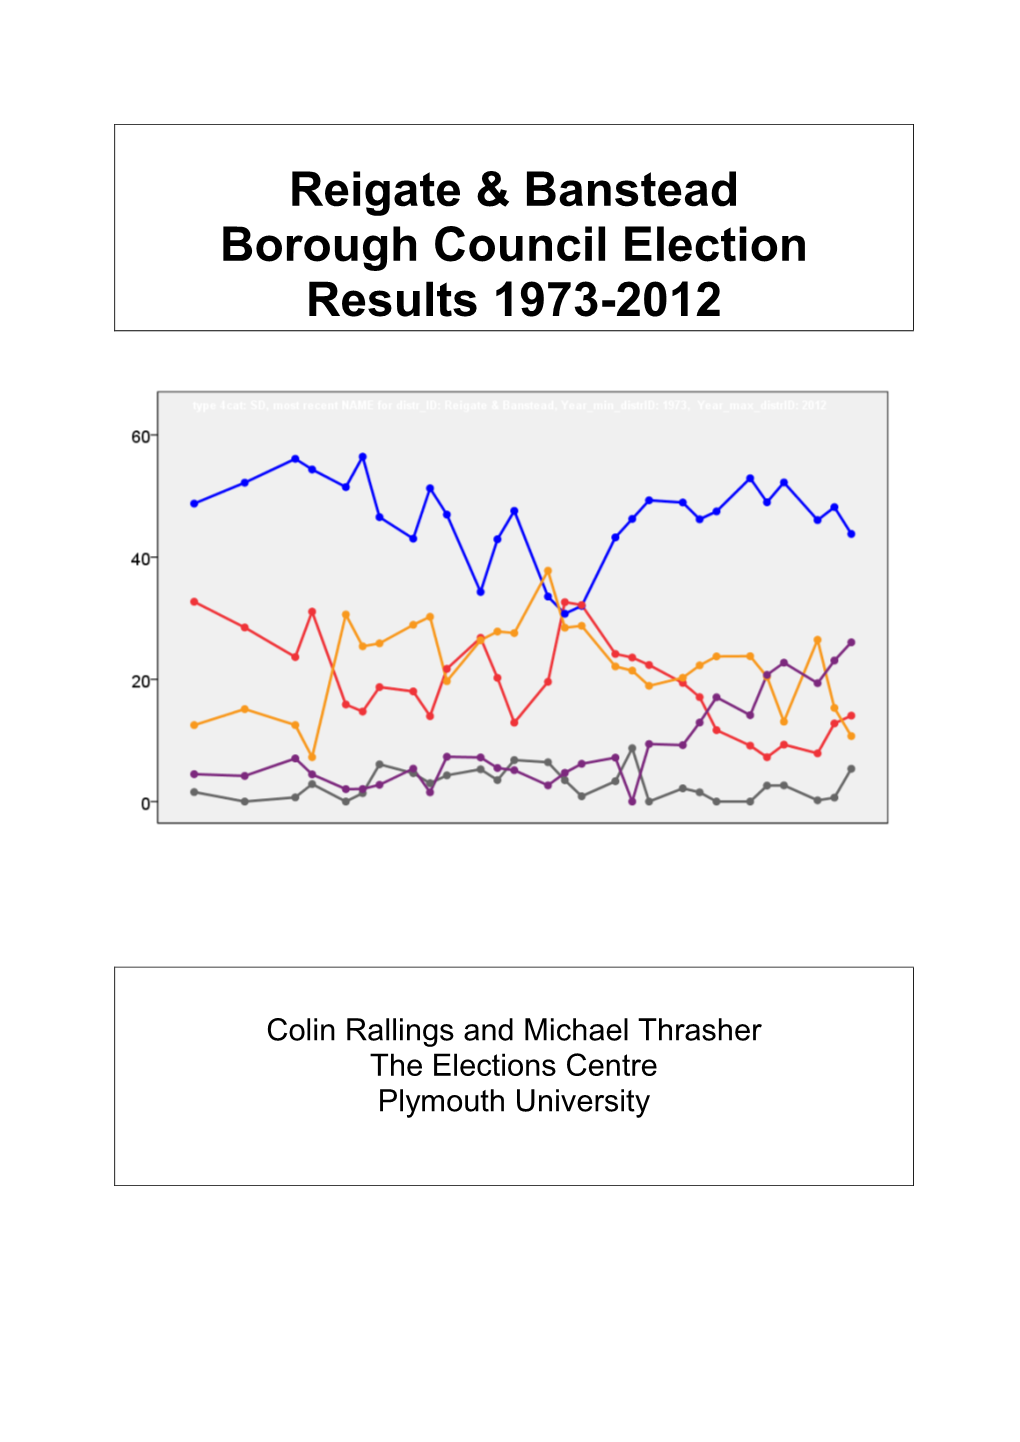 Reigate & Banstead Borough Council Election Results 1973-2012